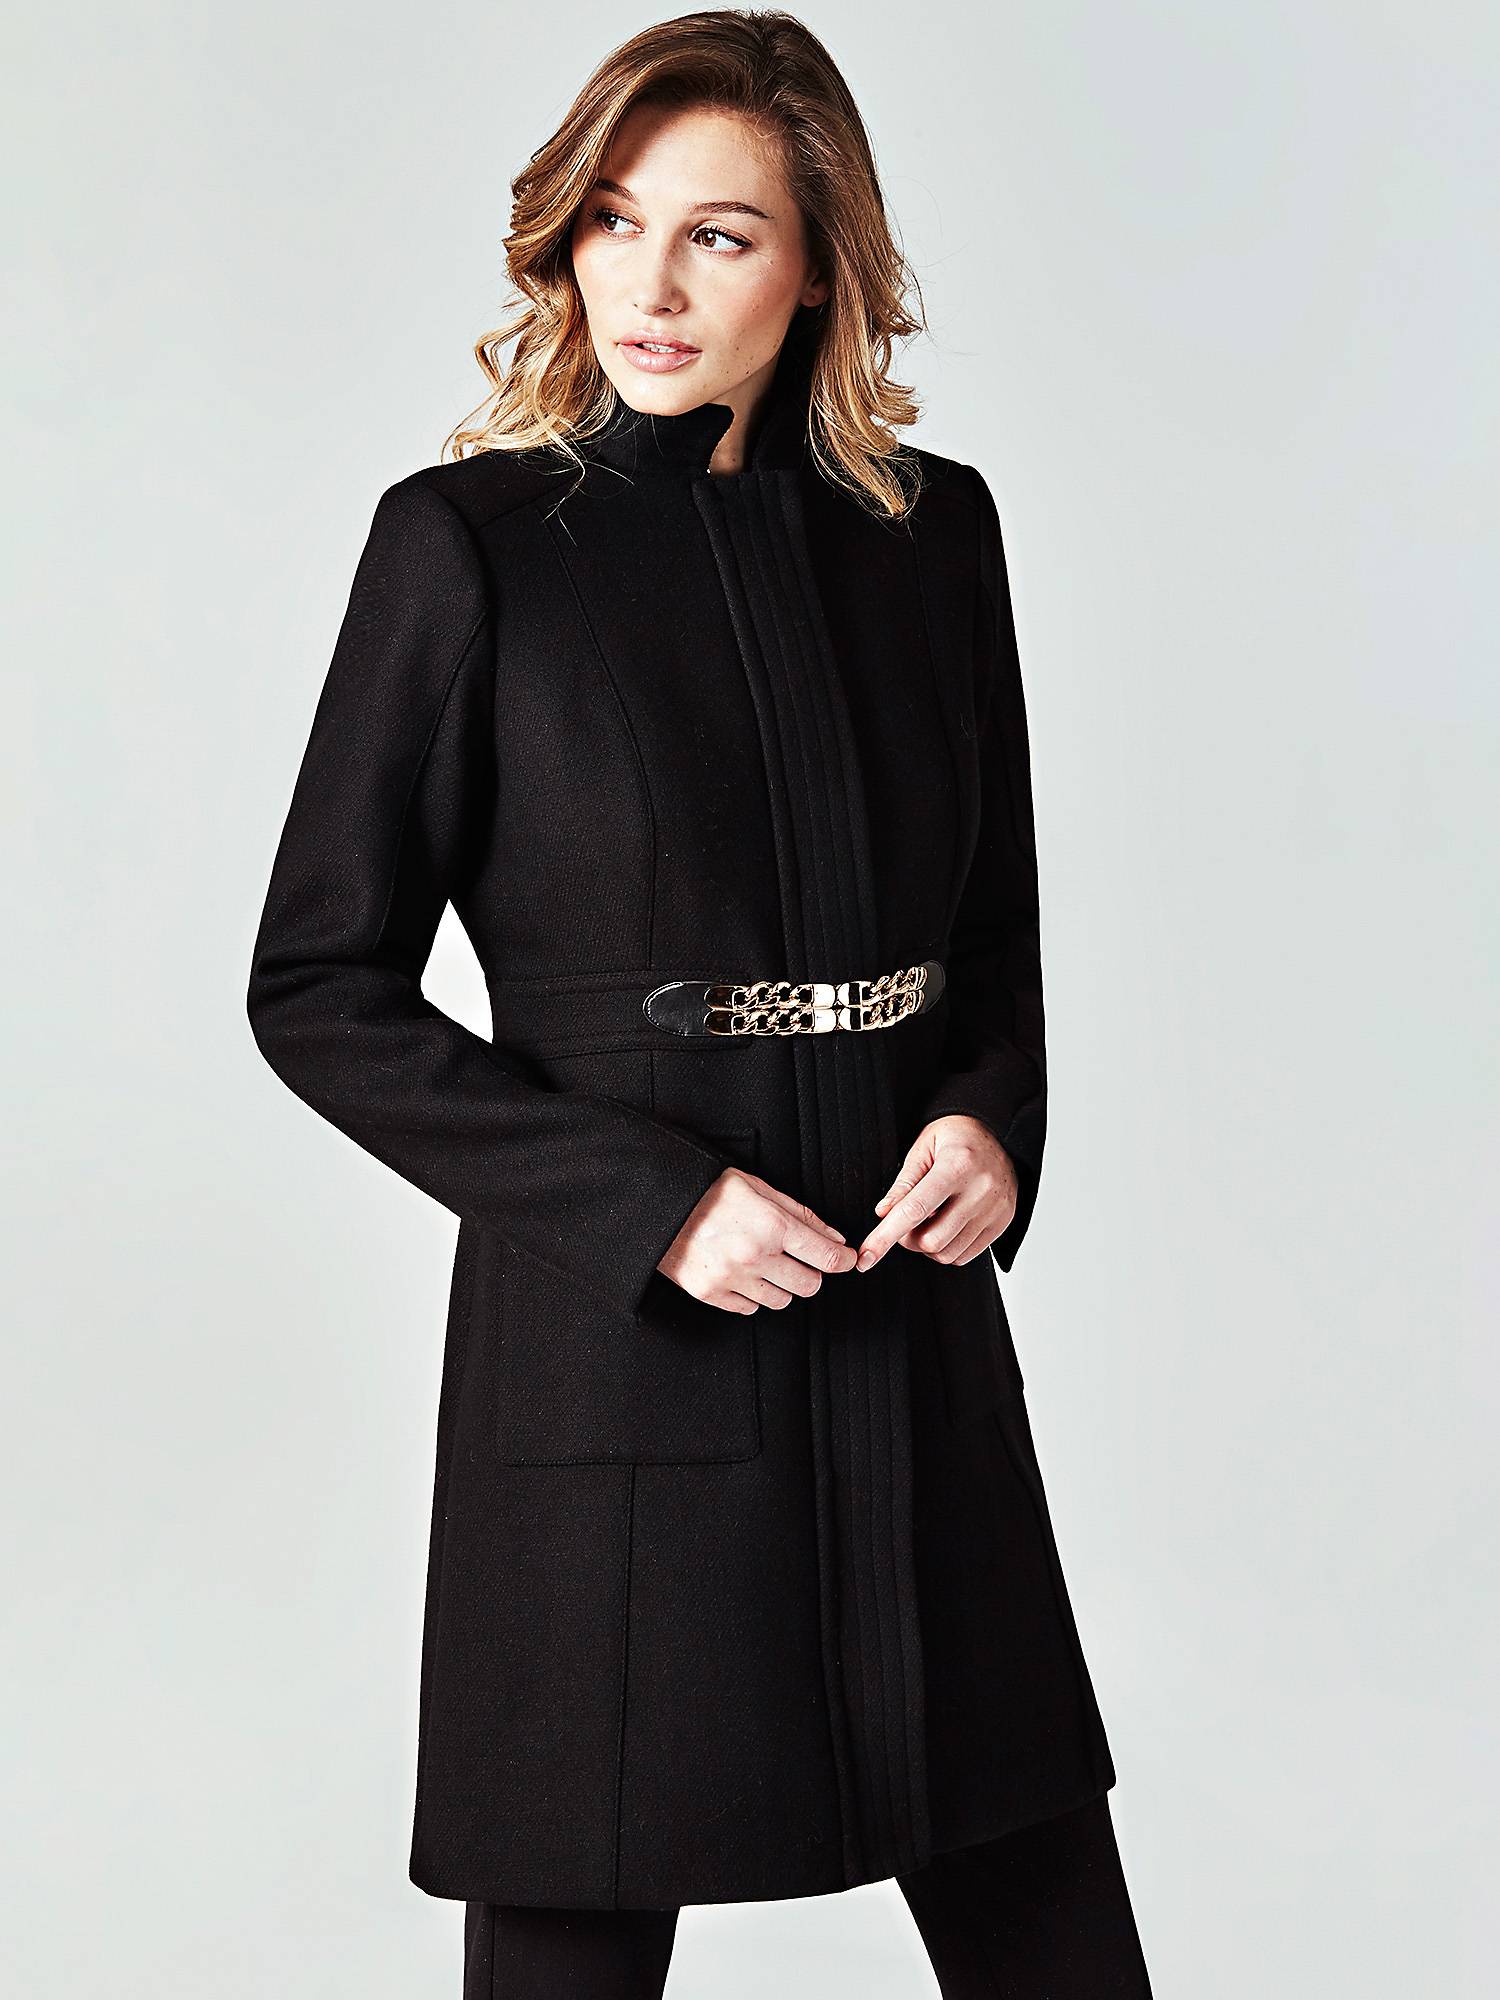 Cappotto nero elegante Guess a 299 euro cappotti eleganti inverno 2019